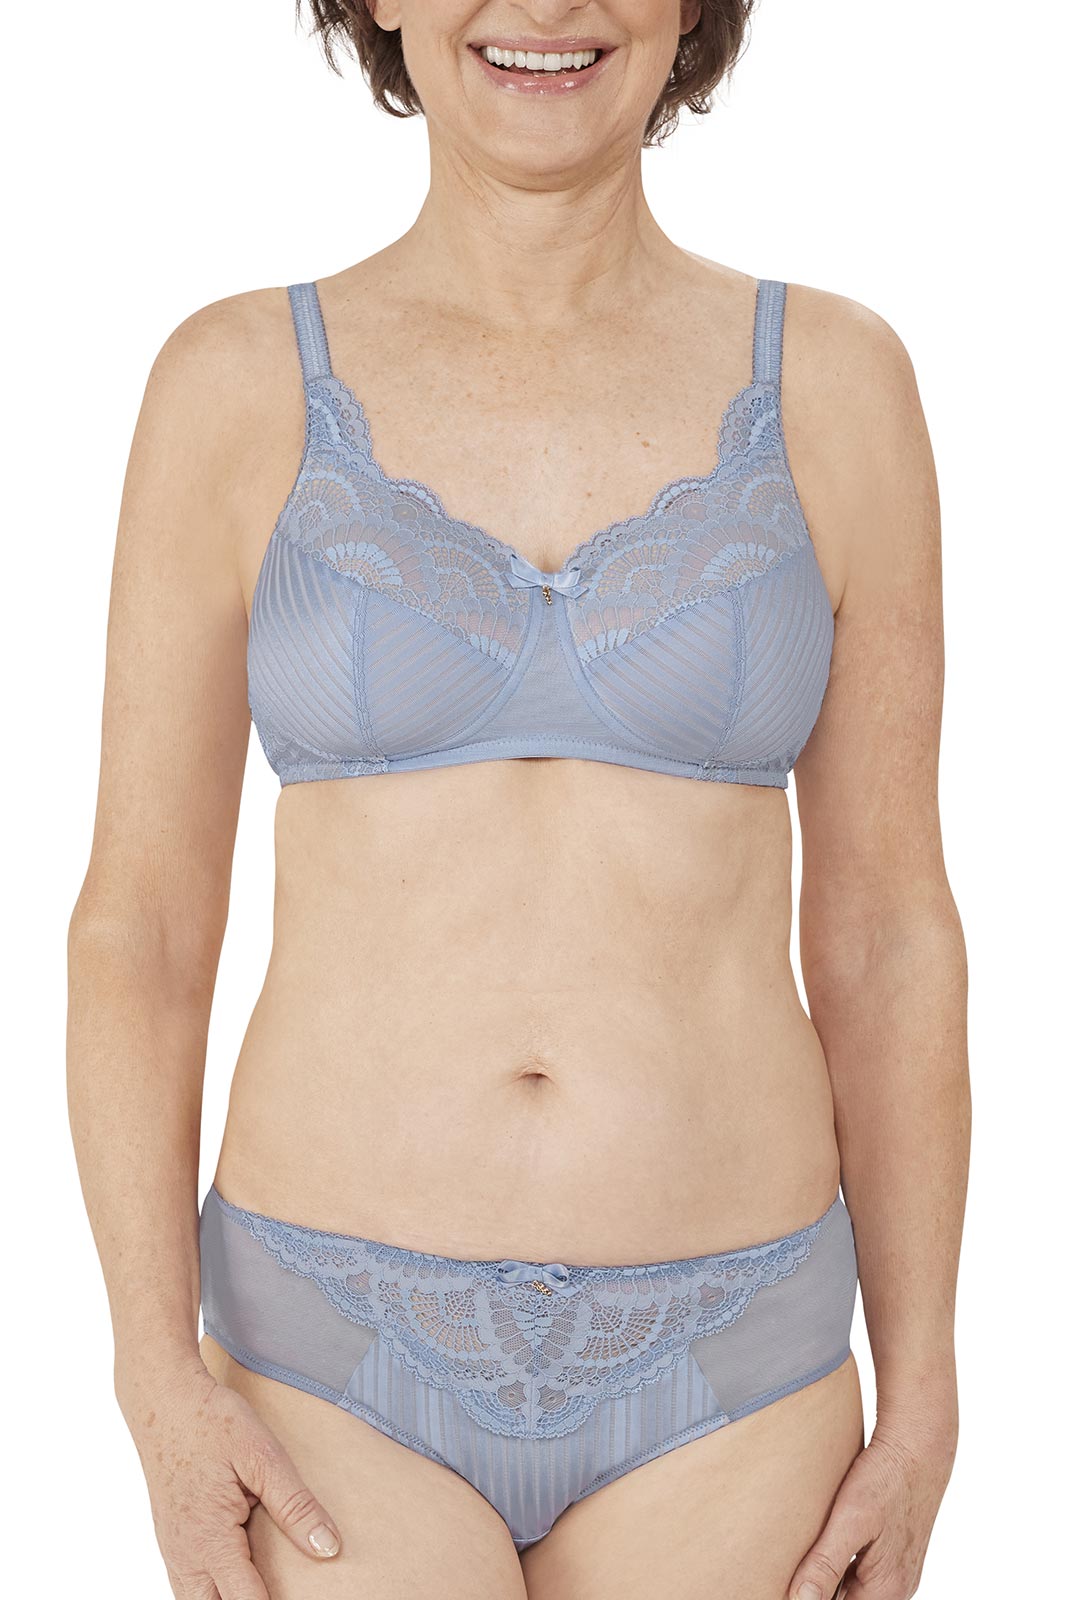 Fitting Guide: Mastectomy Bra and Swimwear - Amoena